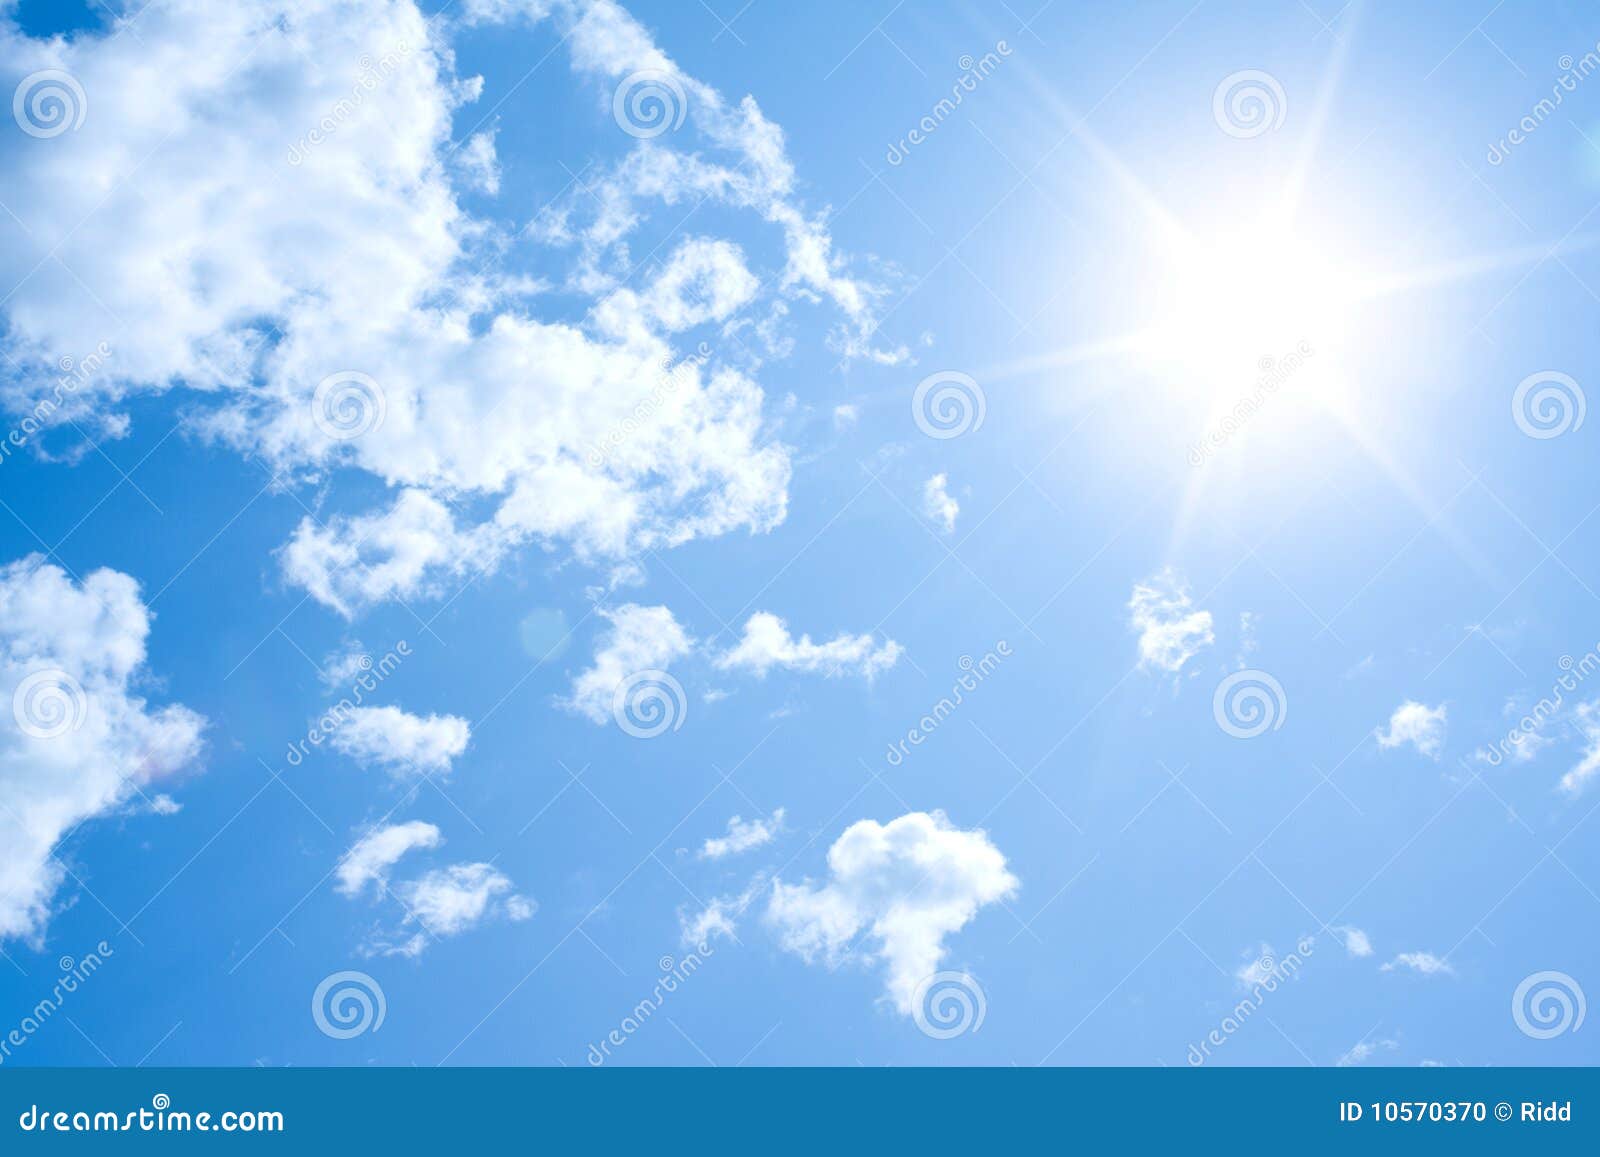 sunny sky background